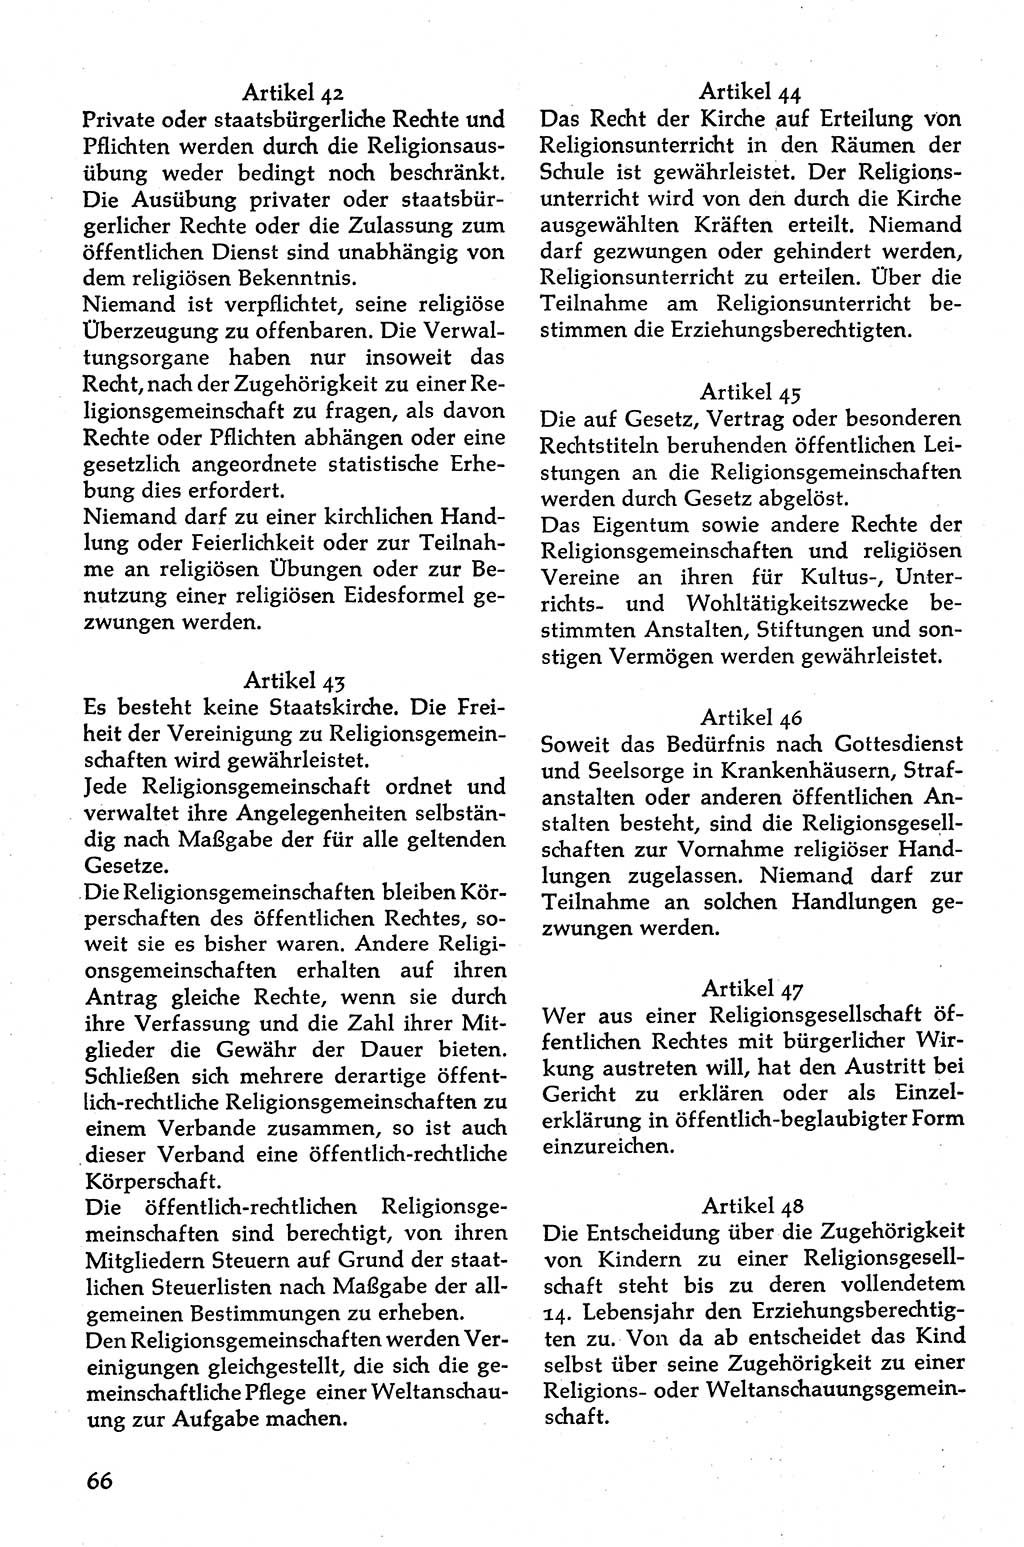 Volksdemokratische Ordnung in Mitteldeutschland [Deutsche Demokratische Republik (DDR)], Texte zur verfassungsrechtlichen Situation 1963, Seite 66 (Volksdem. Ordn. Md. DDR 1963, S. 66)